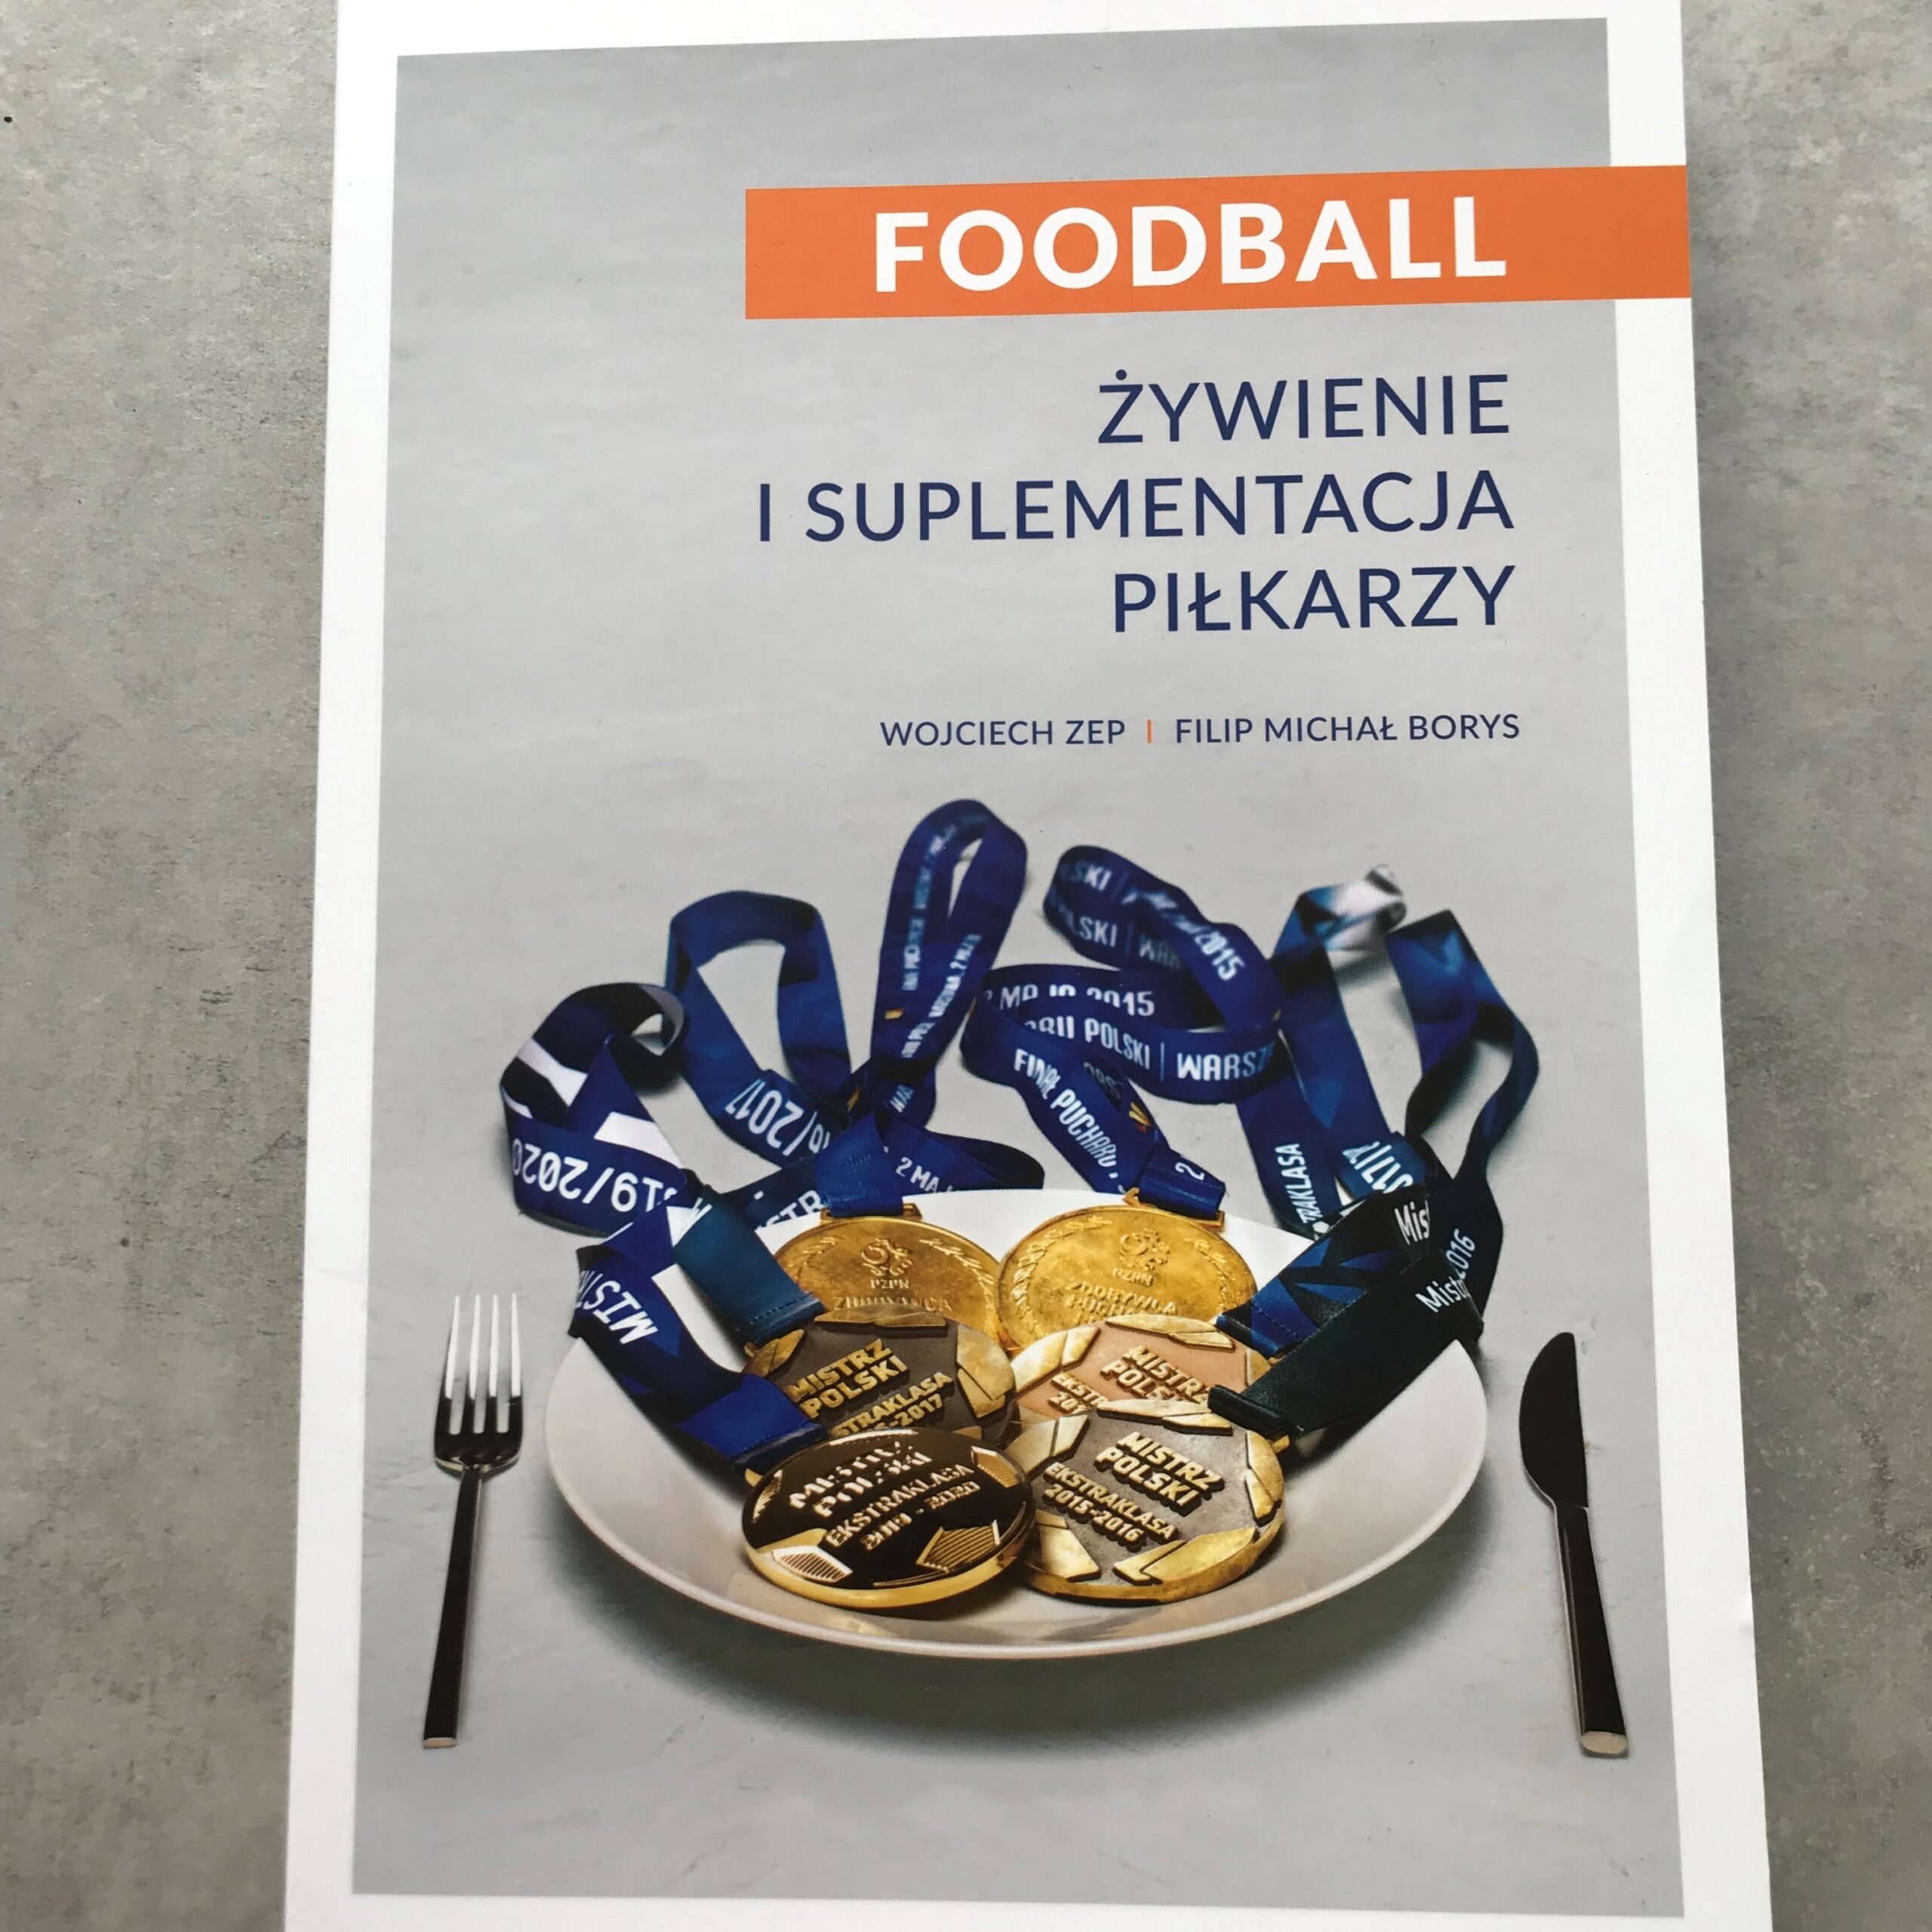 Foodball - Żywienie i suplementacja piłkarzy - recenzja